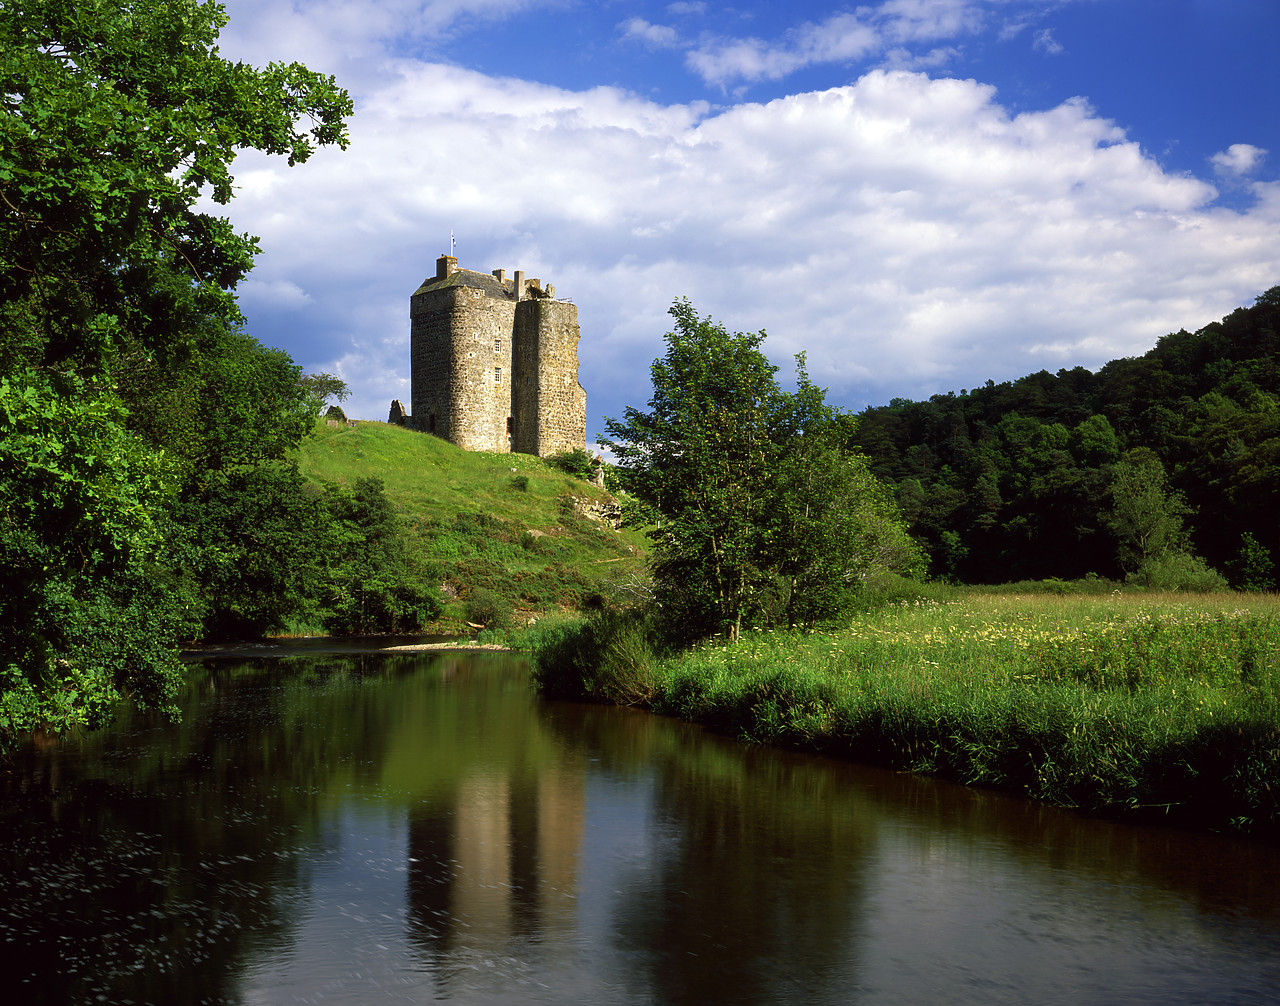 #970410-1 - Neidpath Castle on River Tweed, Near Peebles, Borders Region, Scotland